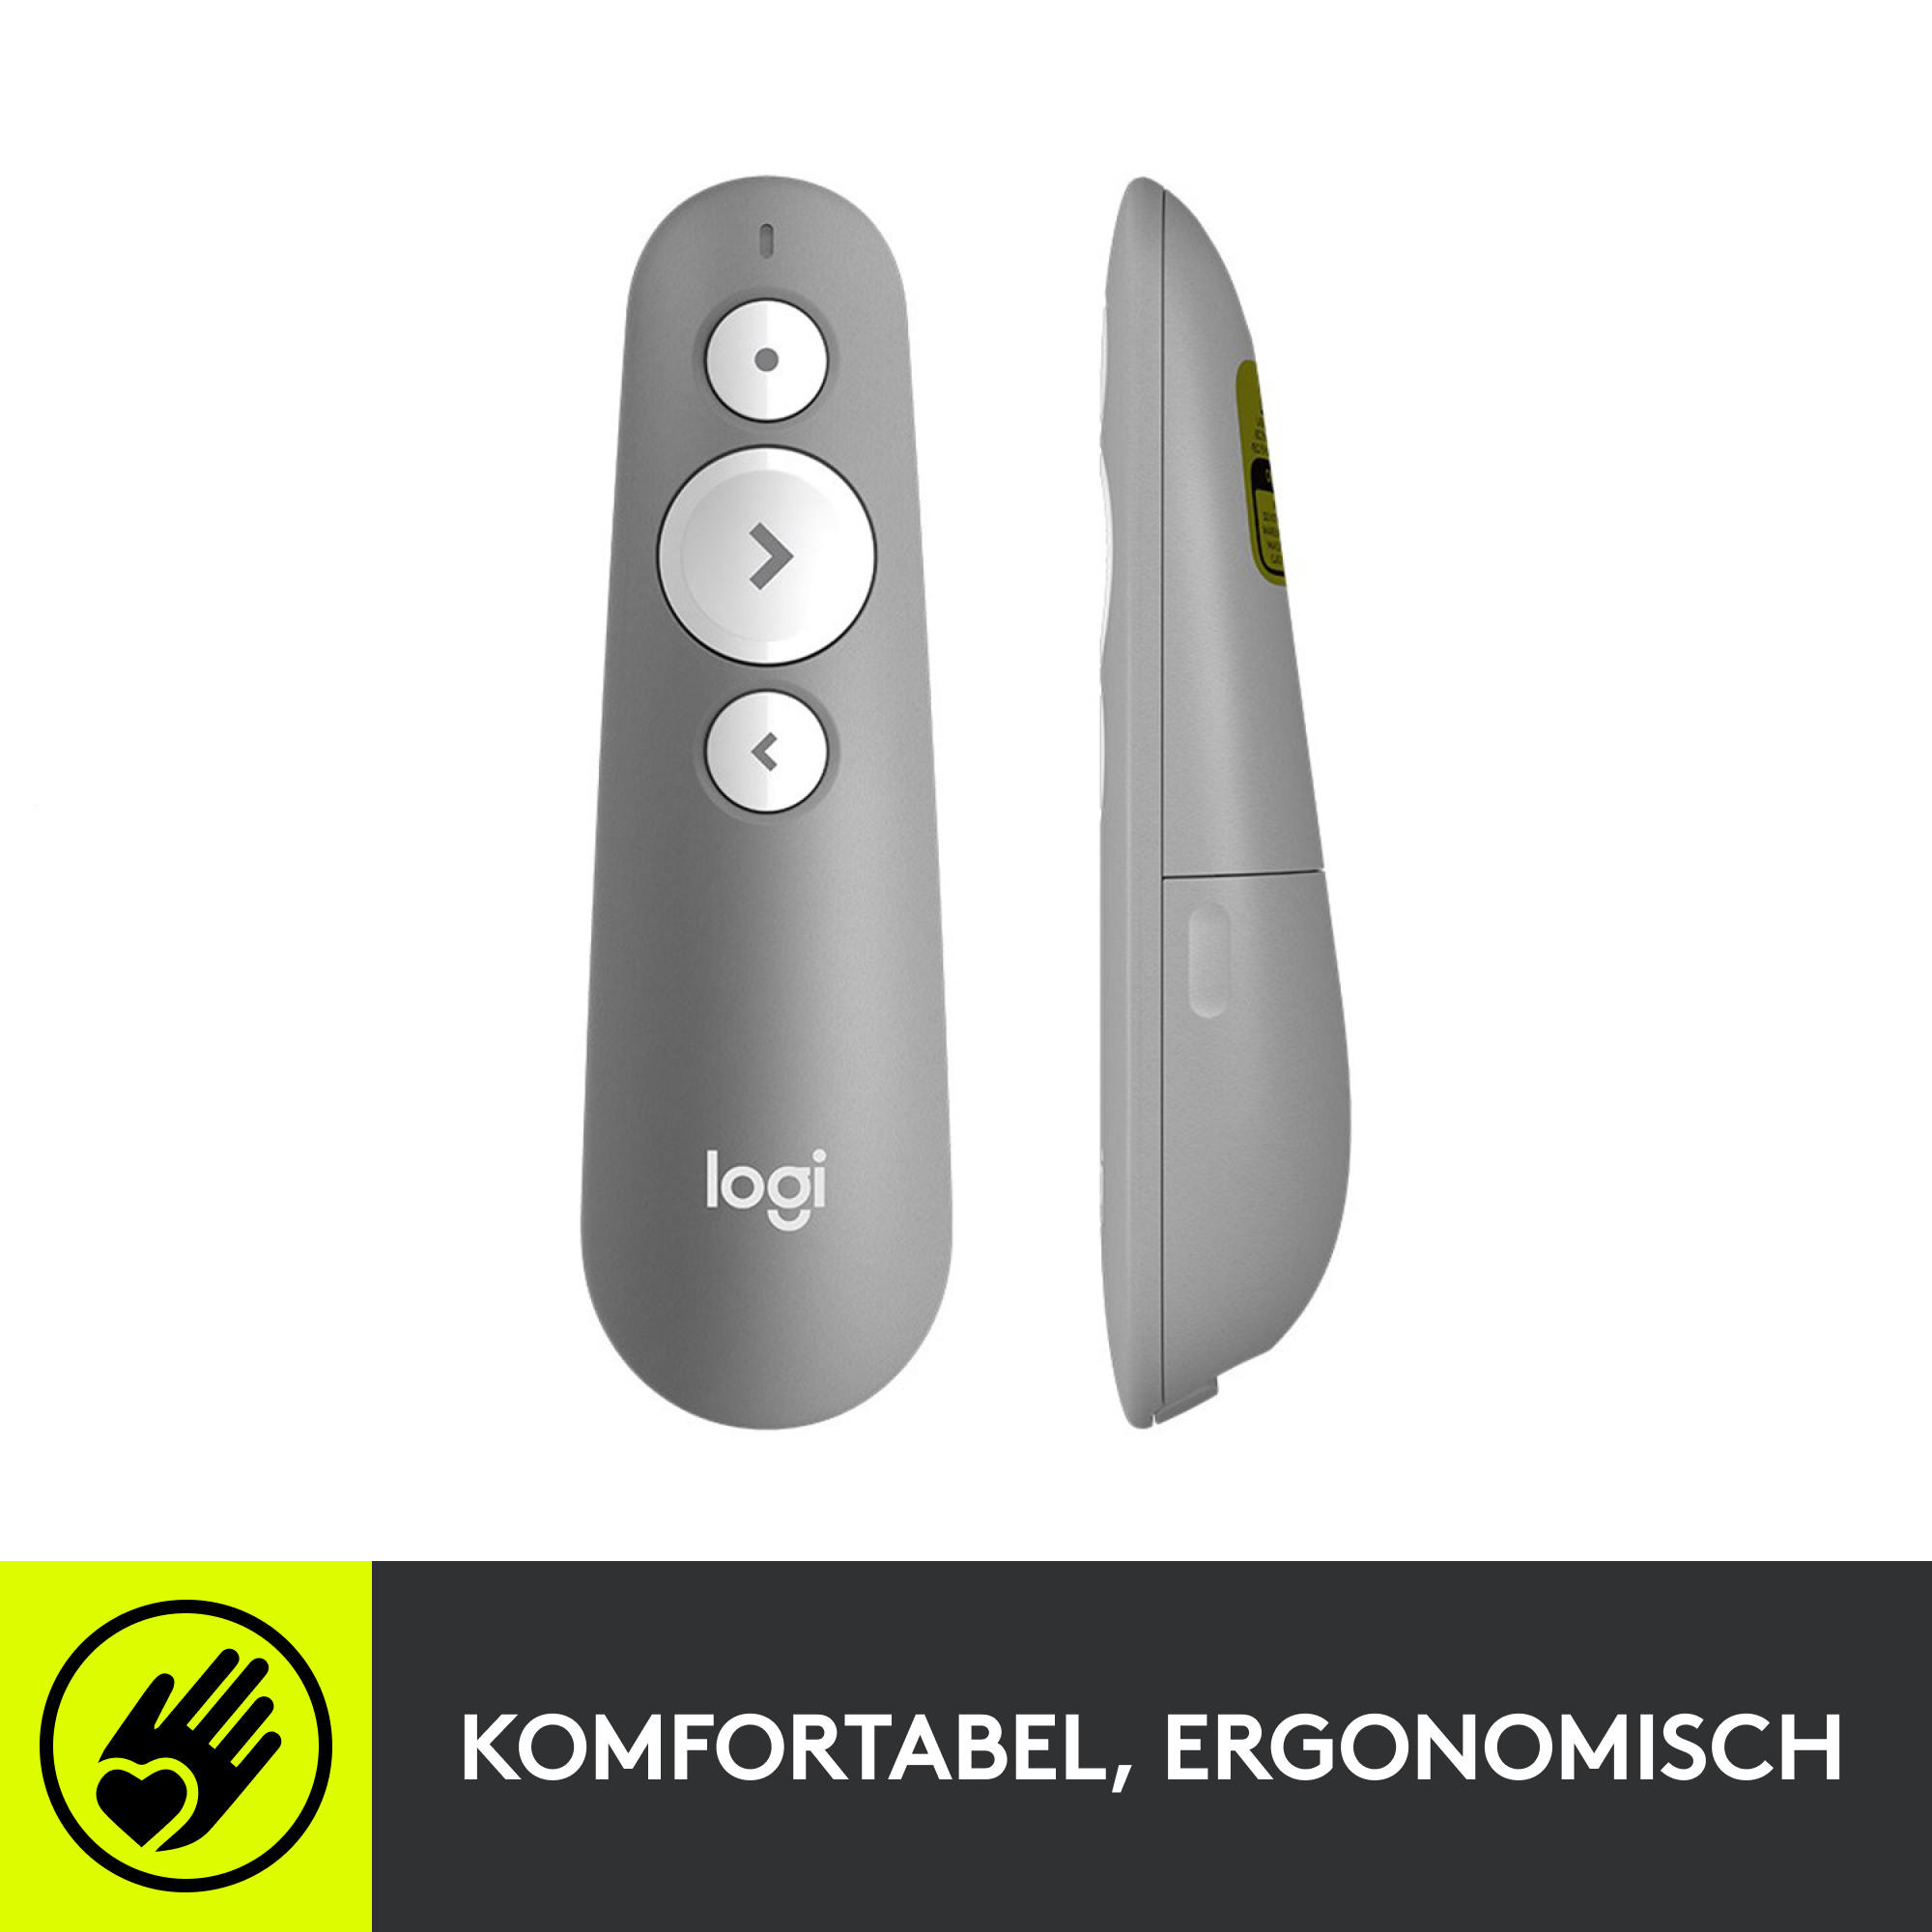 LOGITECH R500 Presenter 910-005843 Wireless Remote Graphite